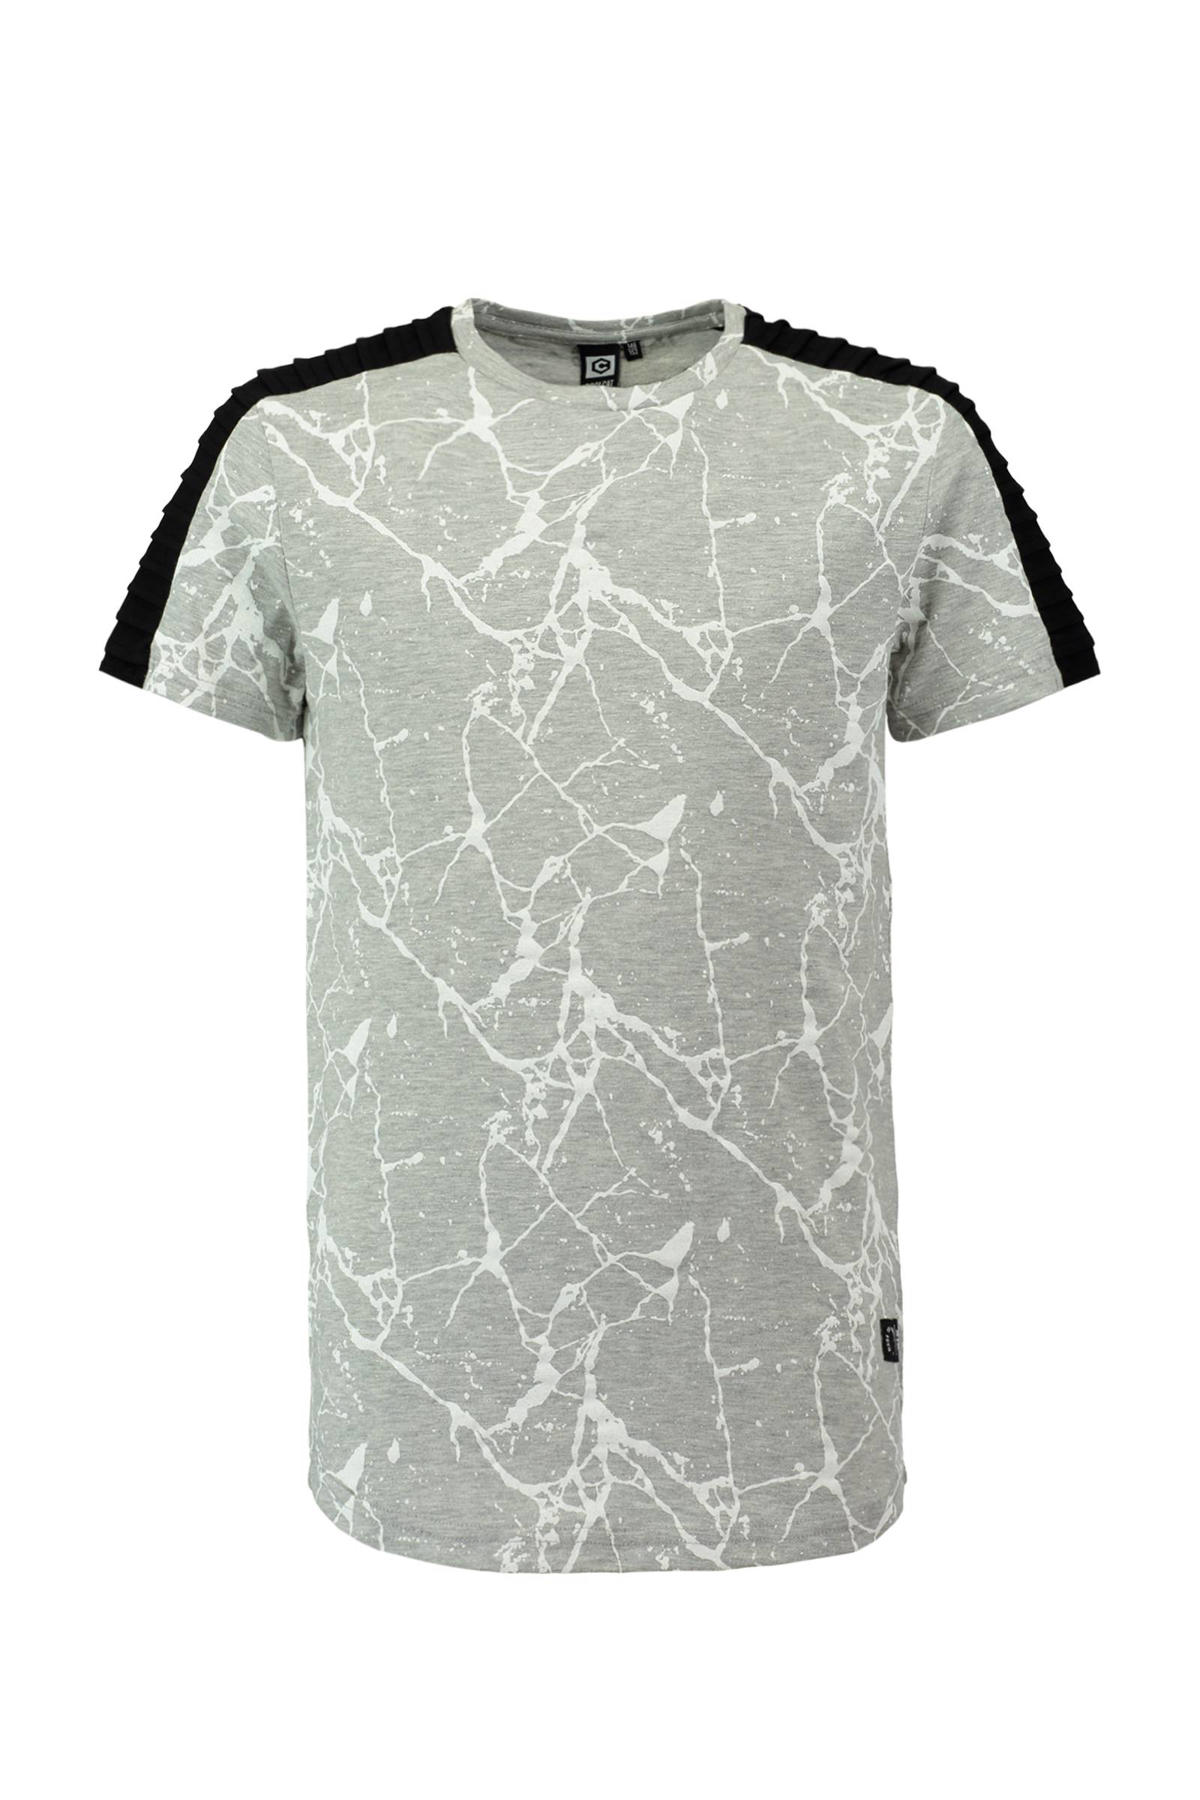 Houden ik ga akkoord met krekel CoolCat lang T-shirt met marmer print | wehkamp